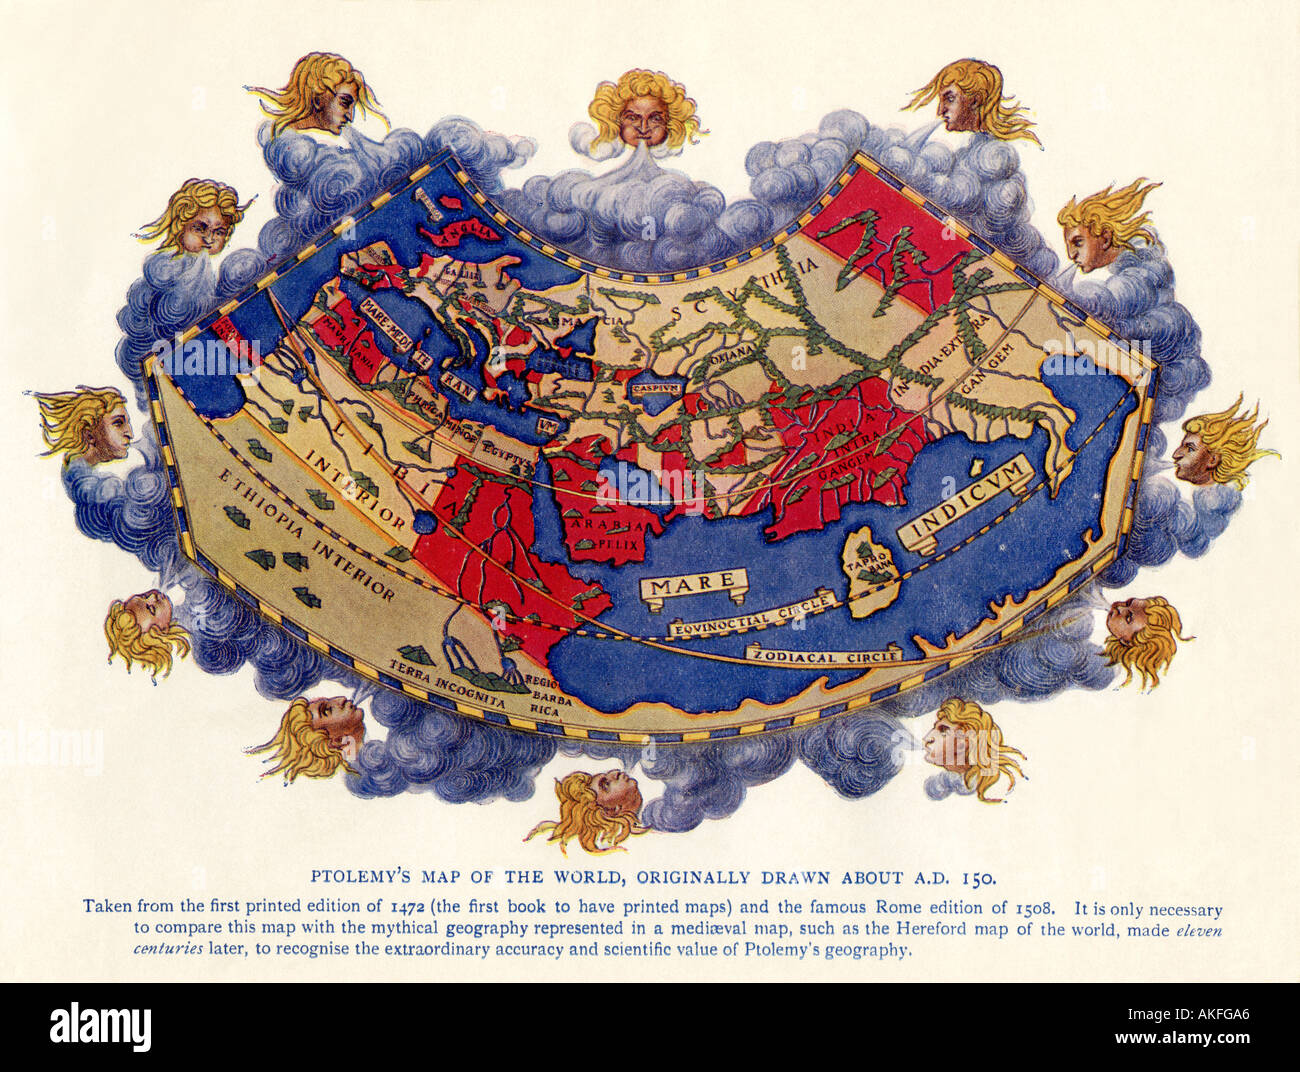 Ptolomeo mapa del mundo circa 150 DC a partir de la edición de 1472. Semitono de color Foto de stock